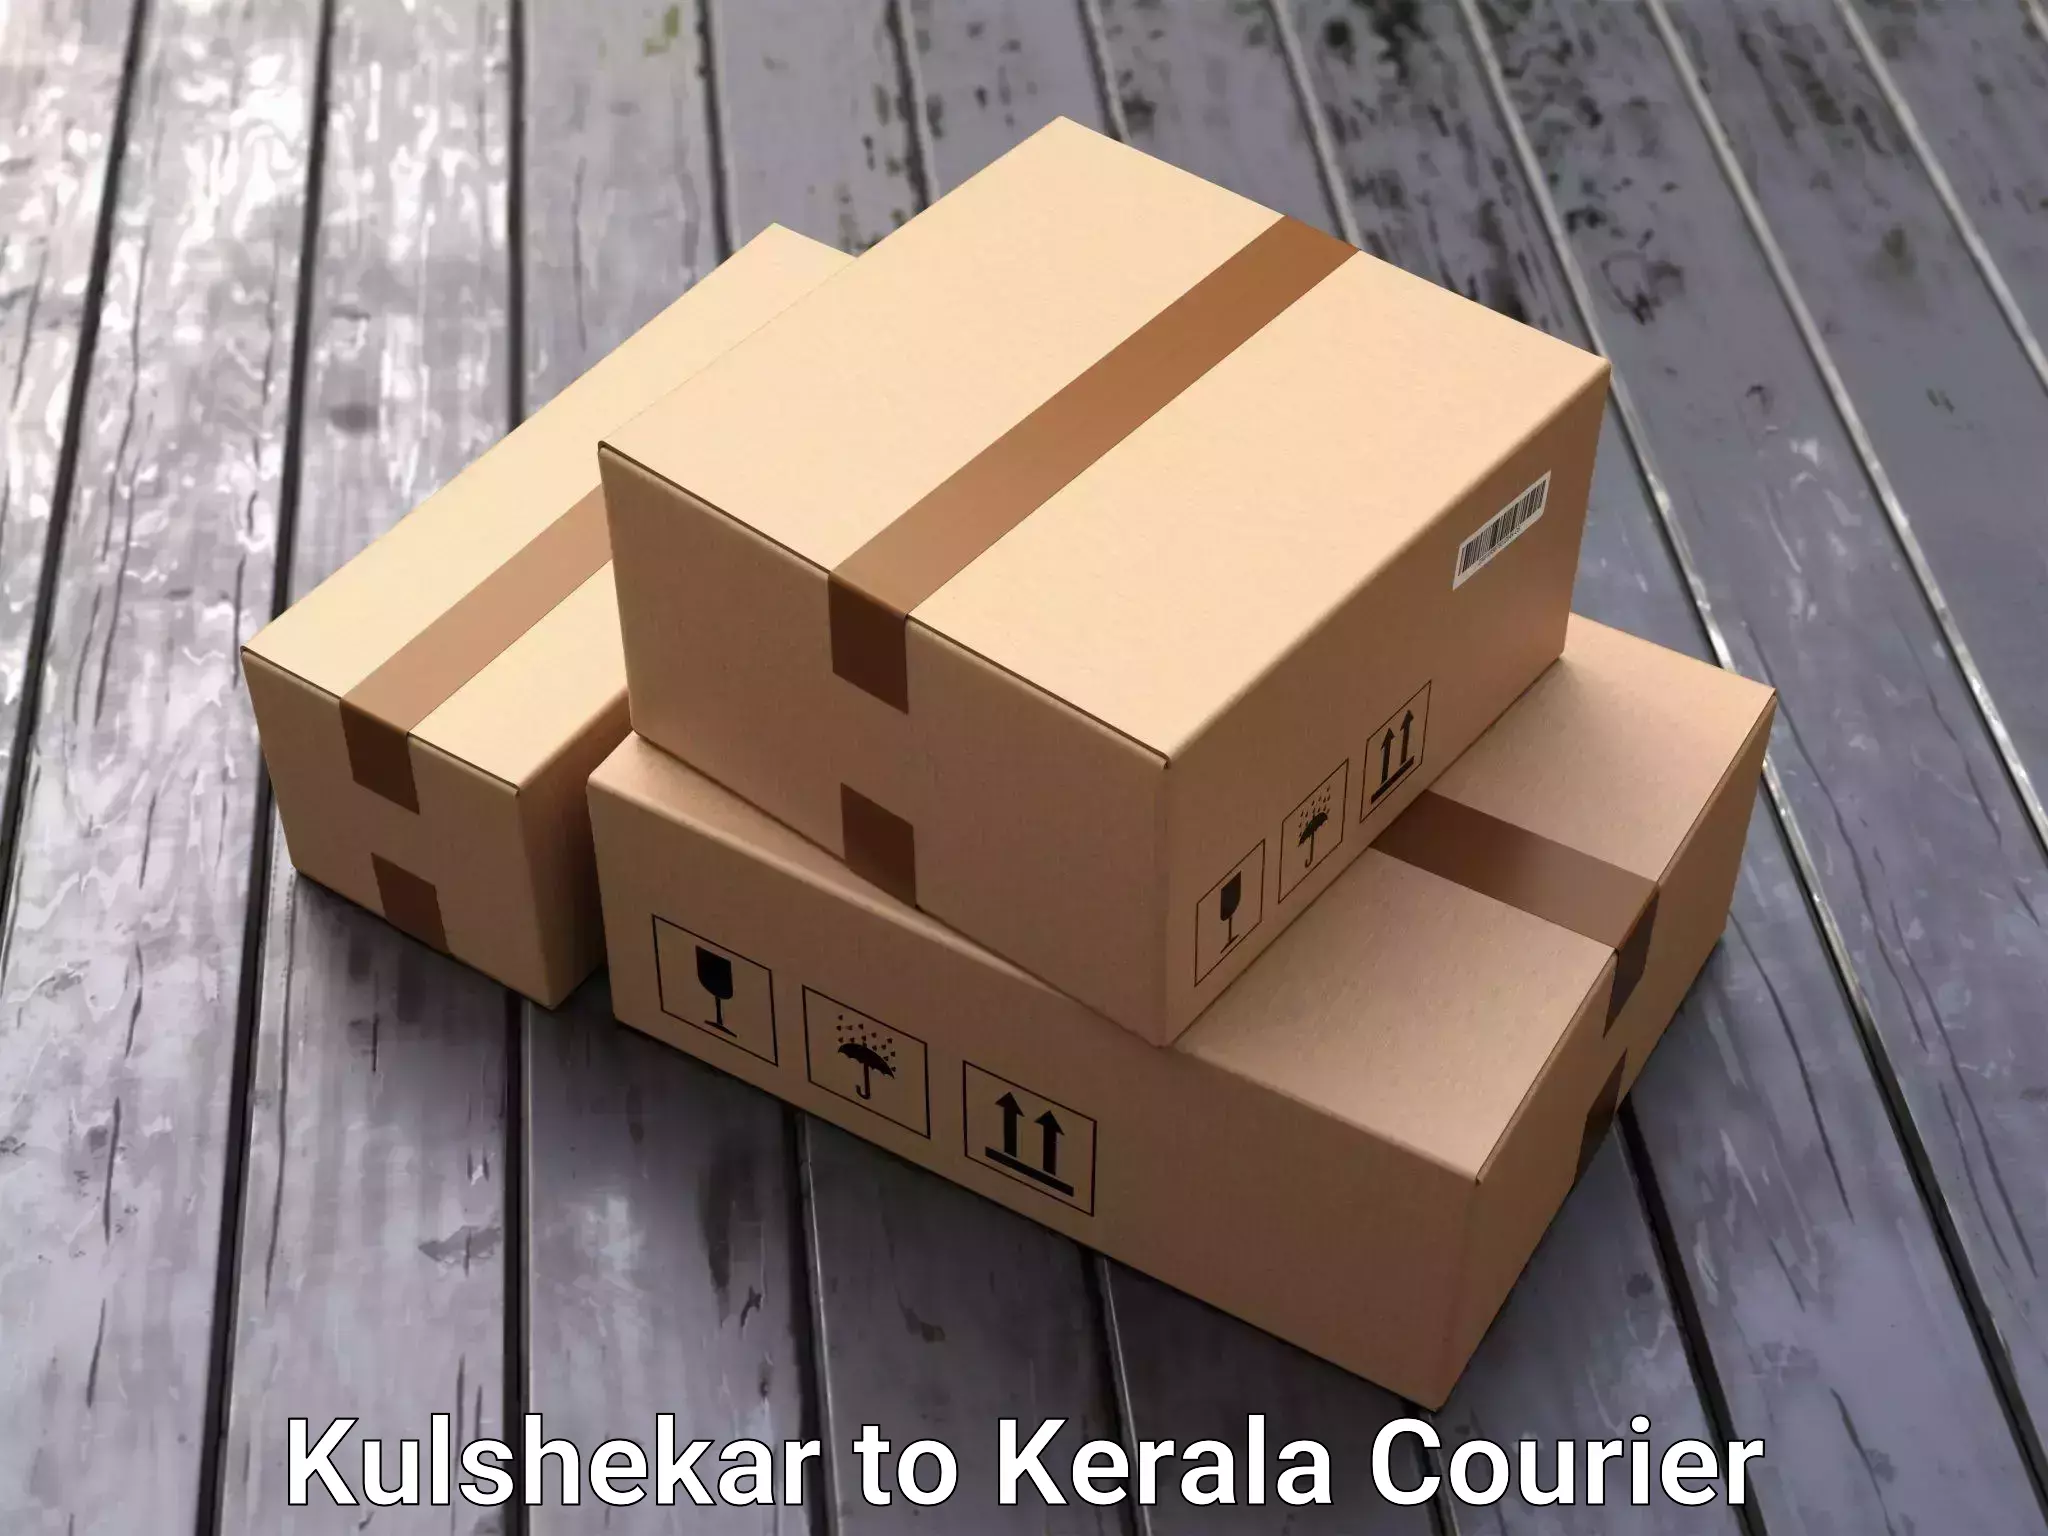 Furniture transport services Kulshekar to Adur Kla